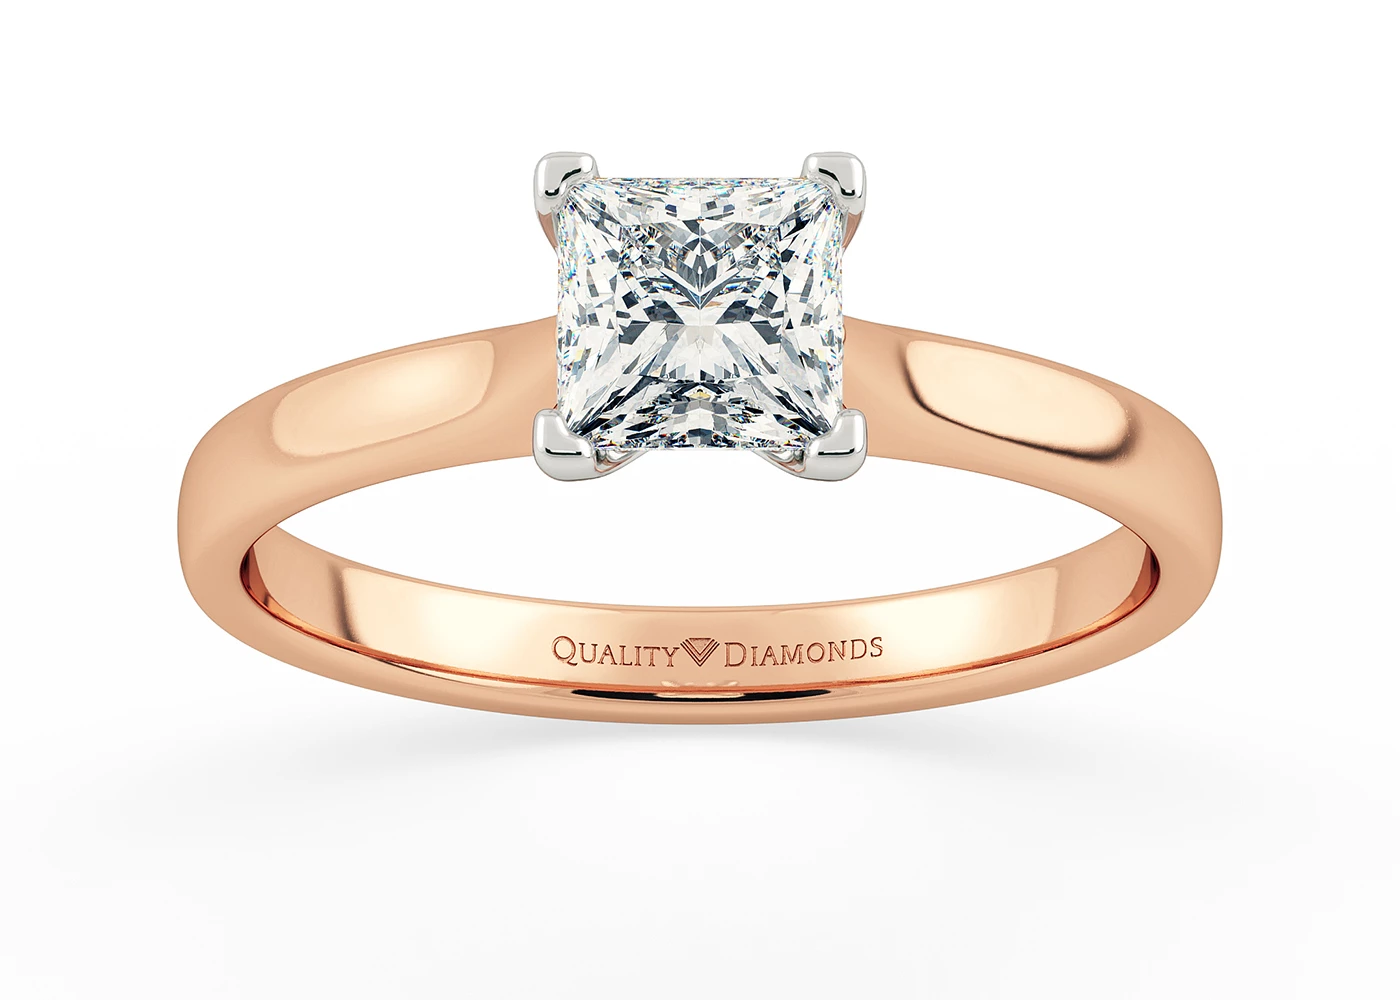 Princess Amara Diamond Ring in 9K Rose Gold